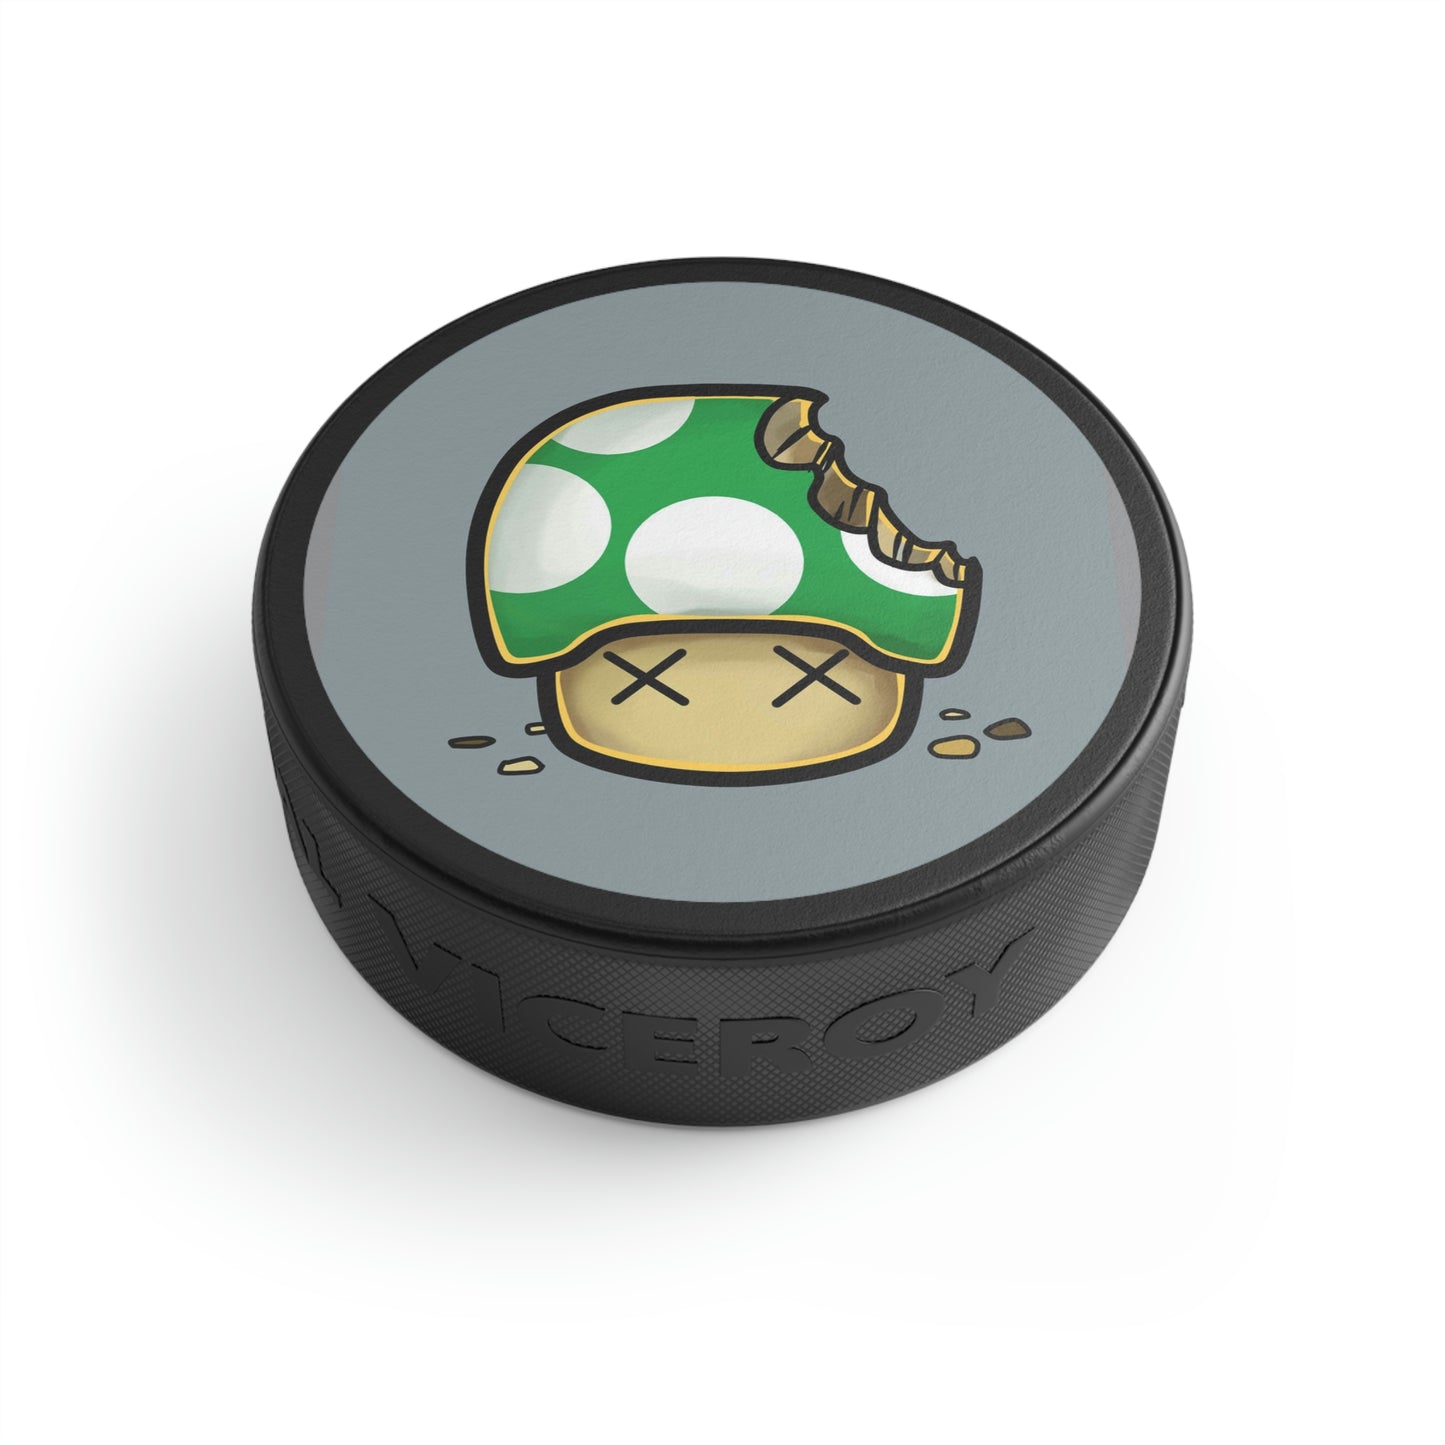 Bitten Mushroom Video Game Style Hockey Puck